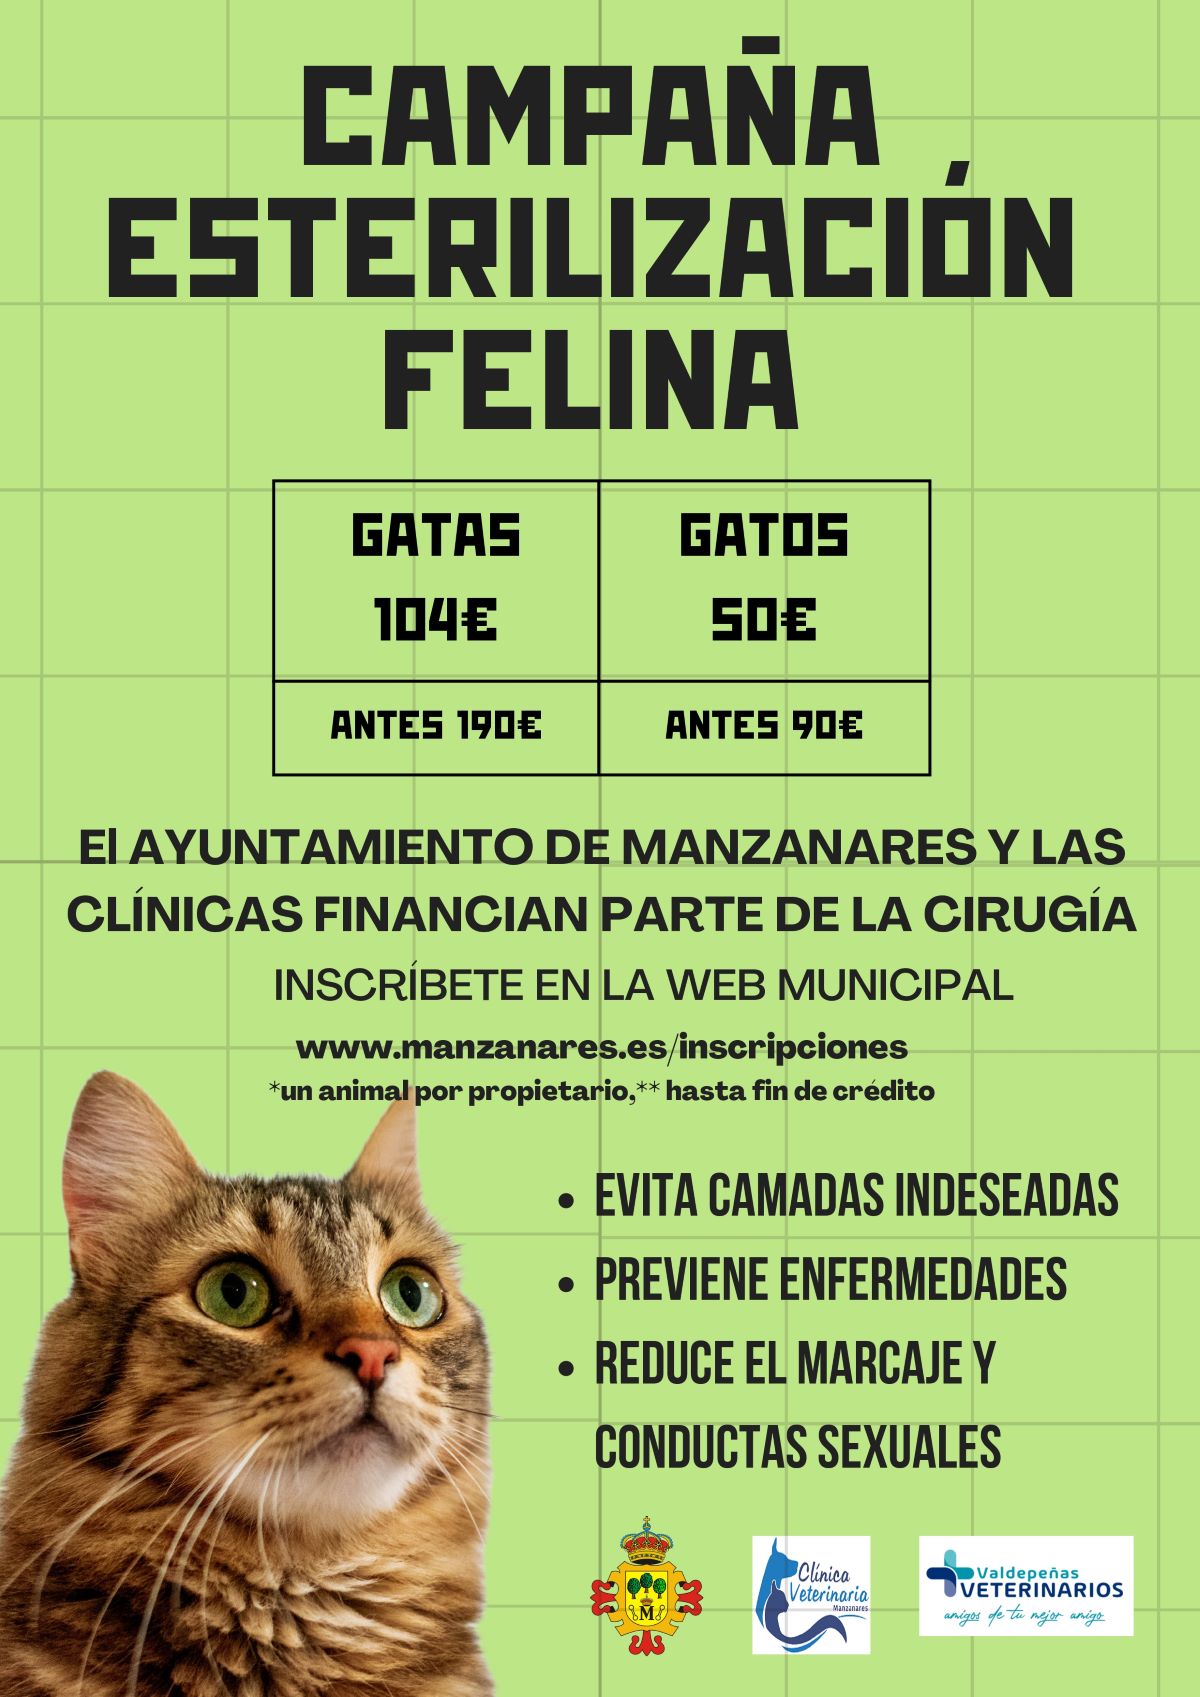 El Ayuntamiento de Manzanares pone en marcha una campaña de esterilización felina